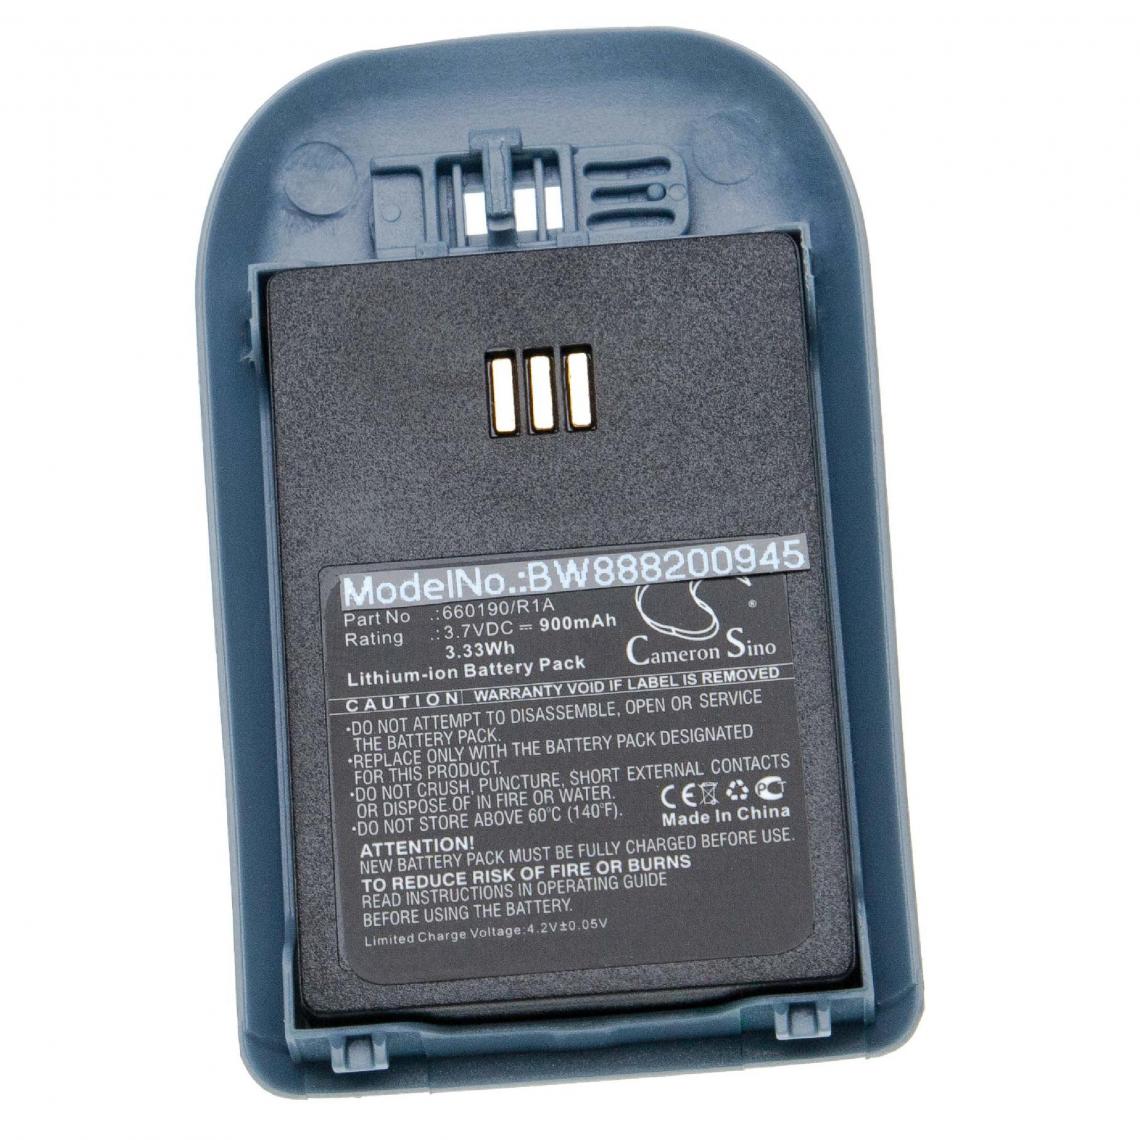 Vhbw - vhbw batterie compatible avec Avaya DECT 3725, DECT 3730, DECT 3735, DH4, WH1 combiné téléphonique téléphone fixe (900mAh, 3.7V, Li-Ion) - Batterie téléphone